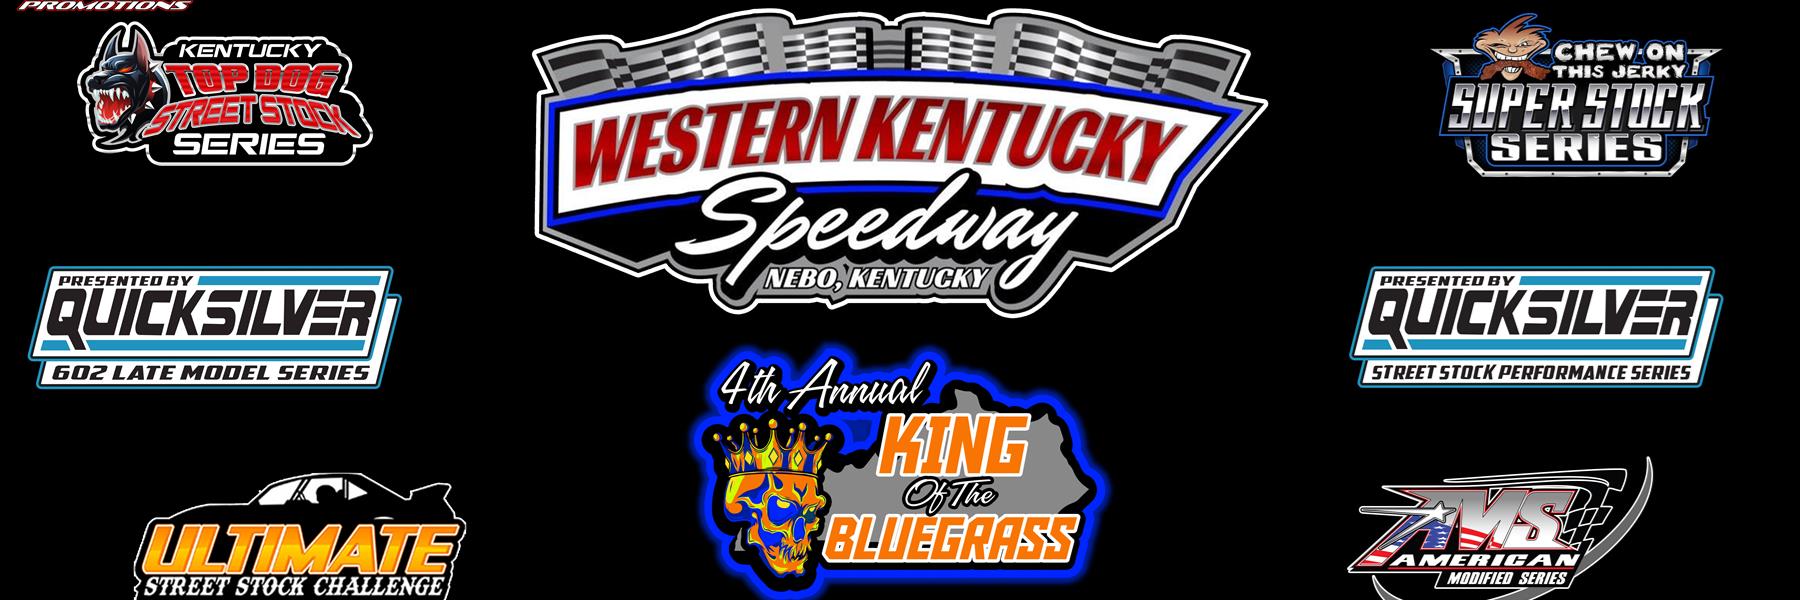 6/11/2022 - Western Kentucky Speedway